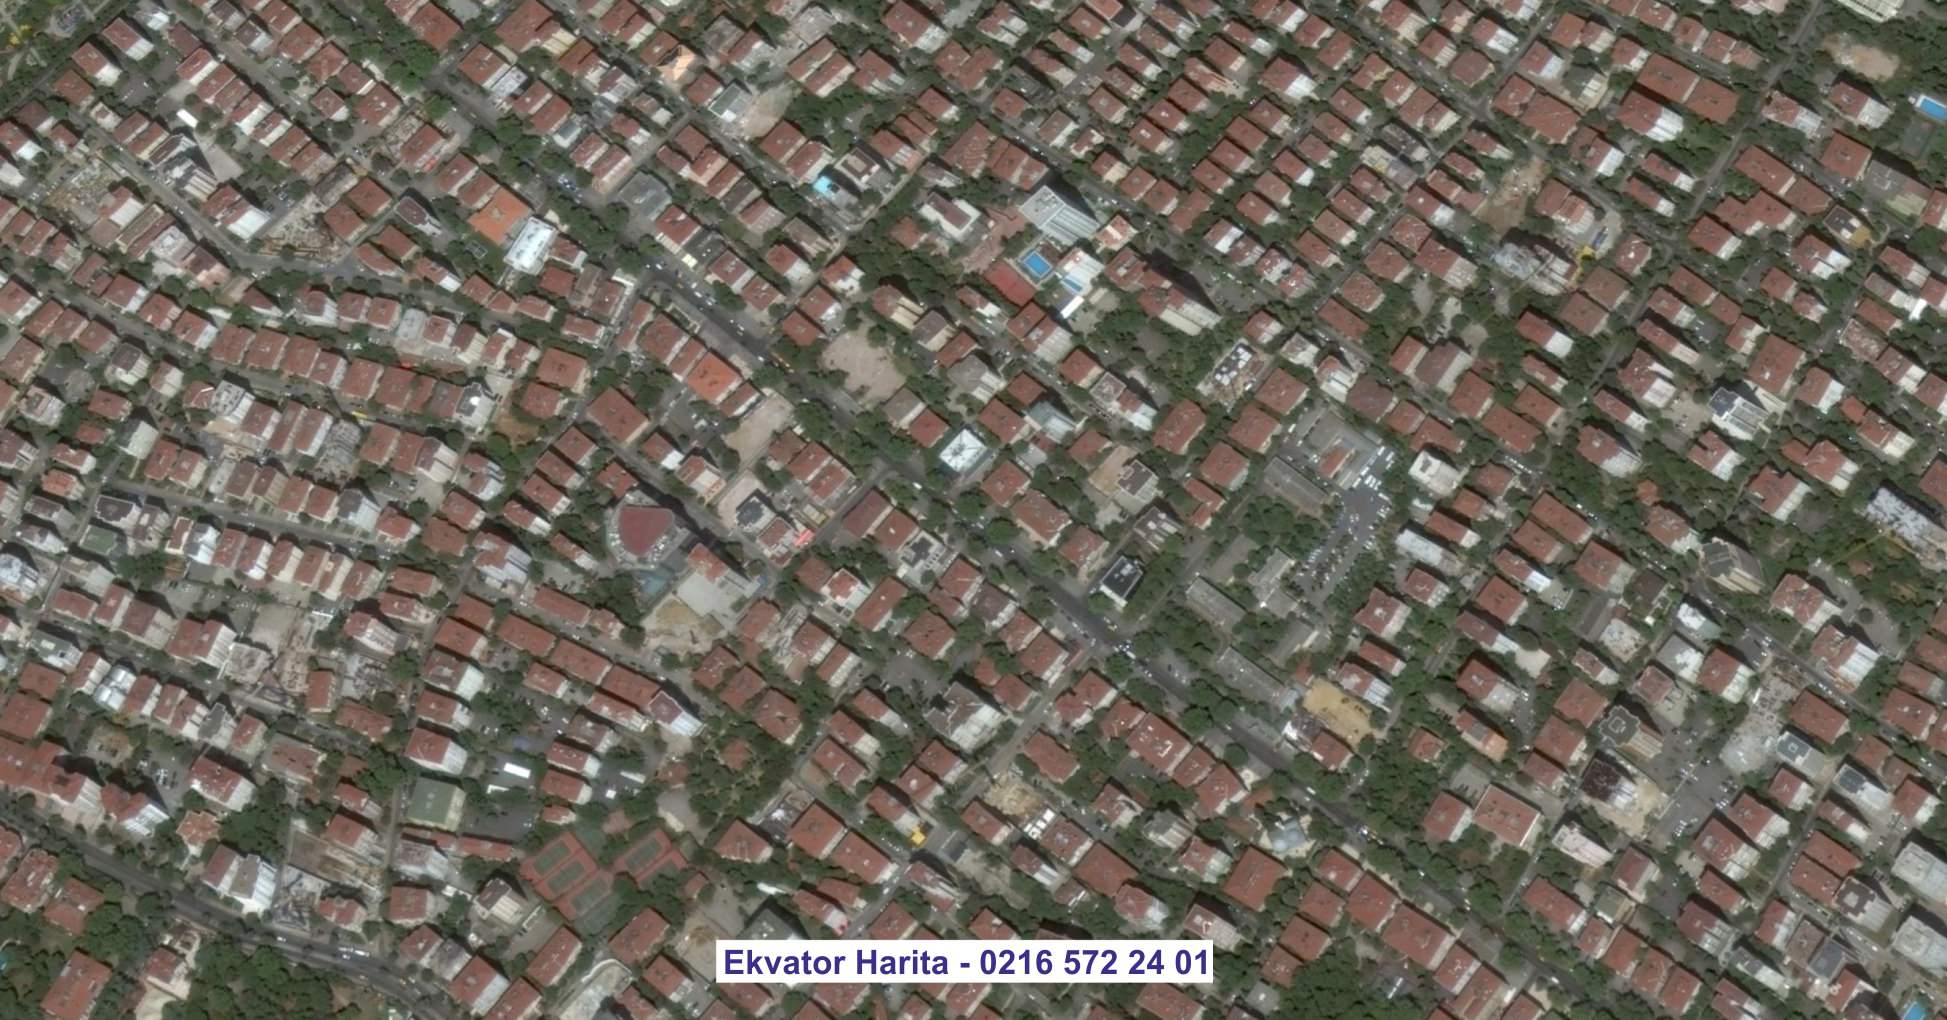 Afrin Uydu Görüntüsü Örnek Fotoğrafı